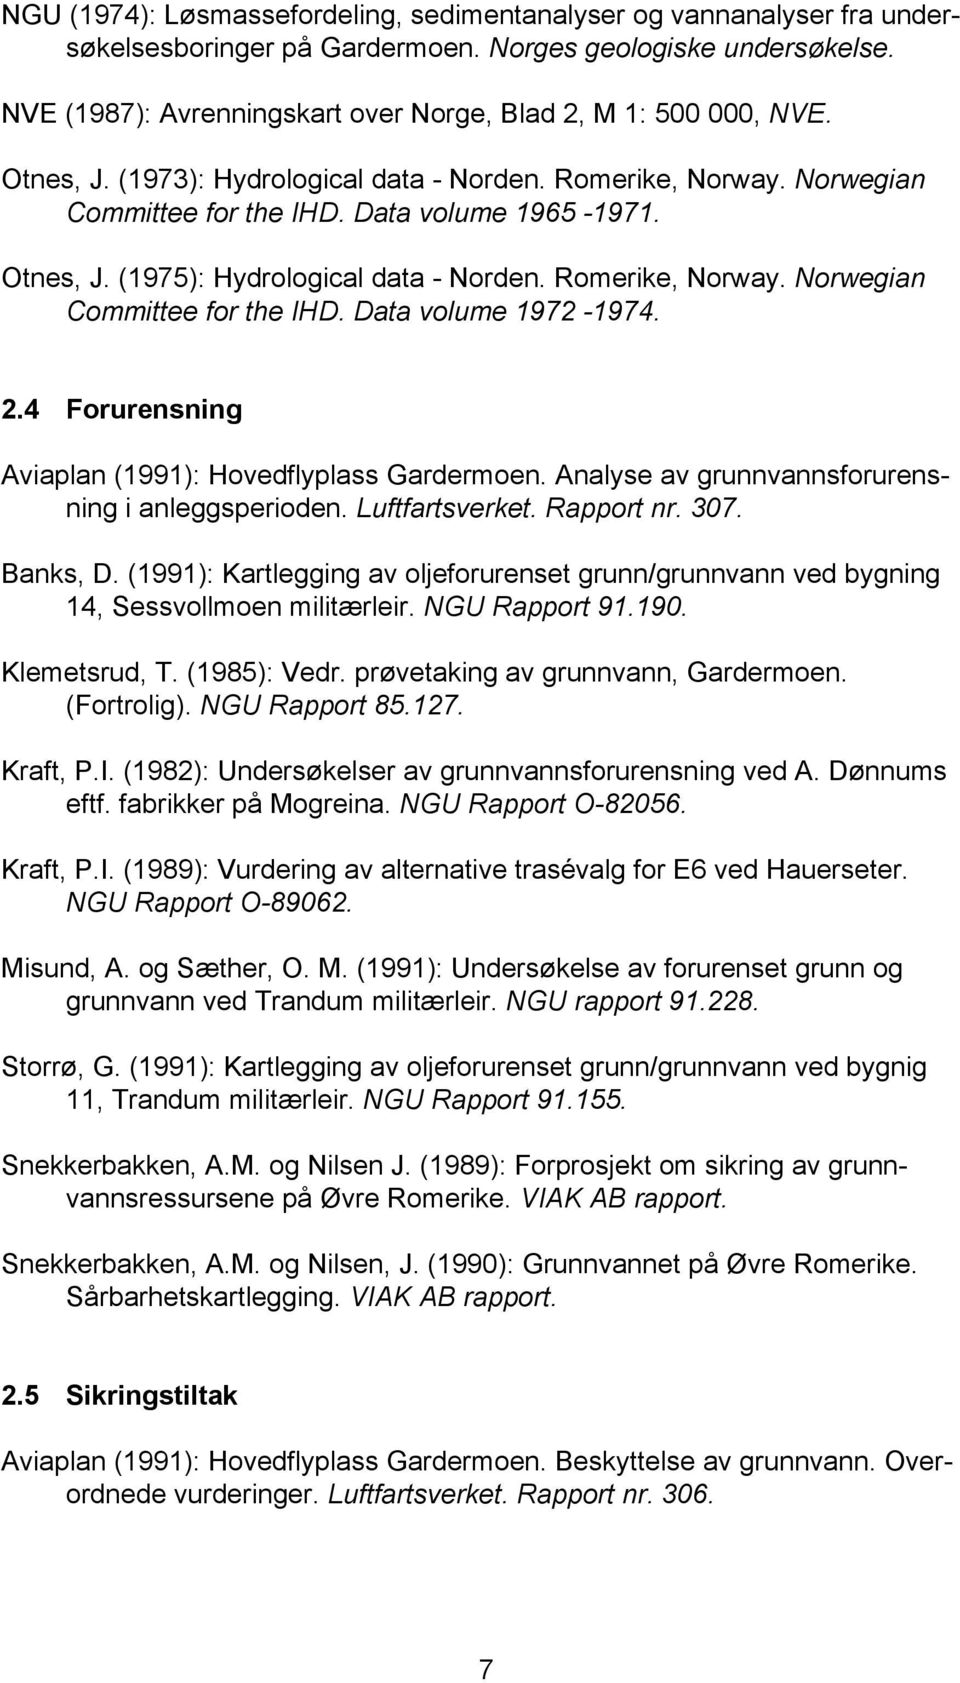 Romerike, Norway. Norwegian Committee for the IHD. Data volume 1972-1974. 2.4 Forurensning Aviaplan (1991): Hovedflyplass Gardermoen. Analyse av grunnvannsforurensning i anleggsperioden.